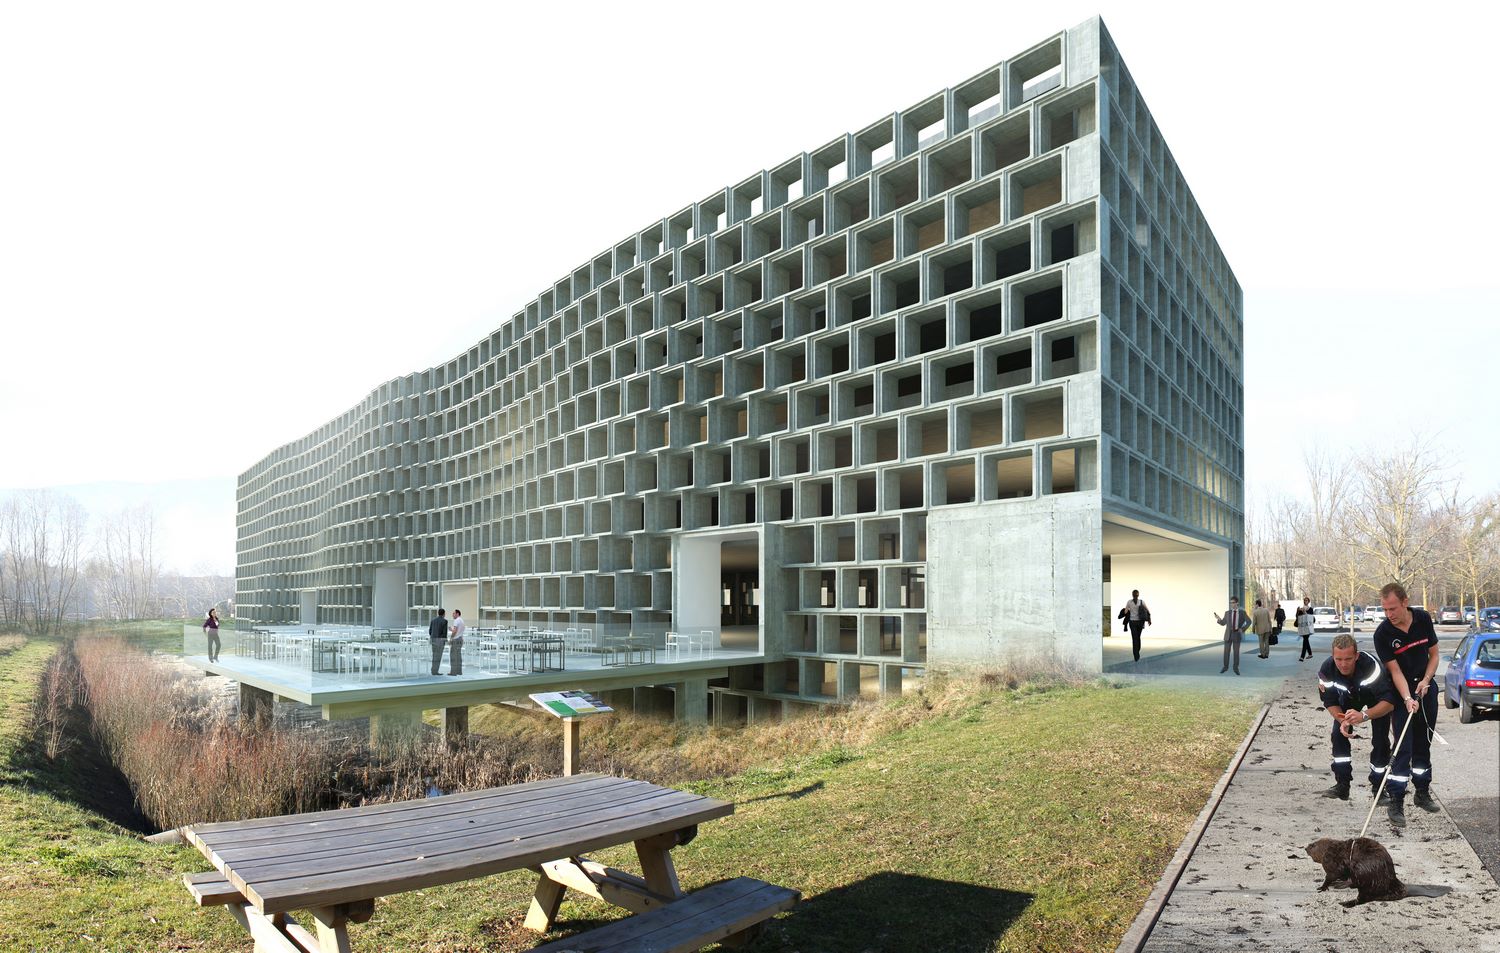 pateyarchitectes - concours pour la construction d'un bâtiment tertiaire sur le site de savoie hexapole - méry - savoie